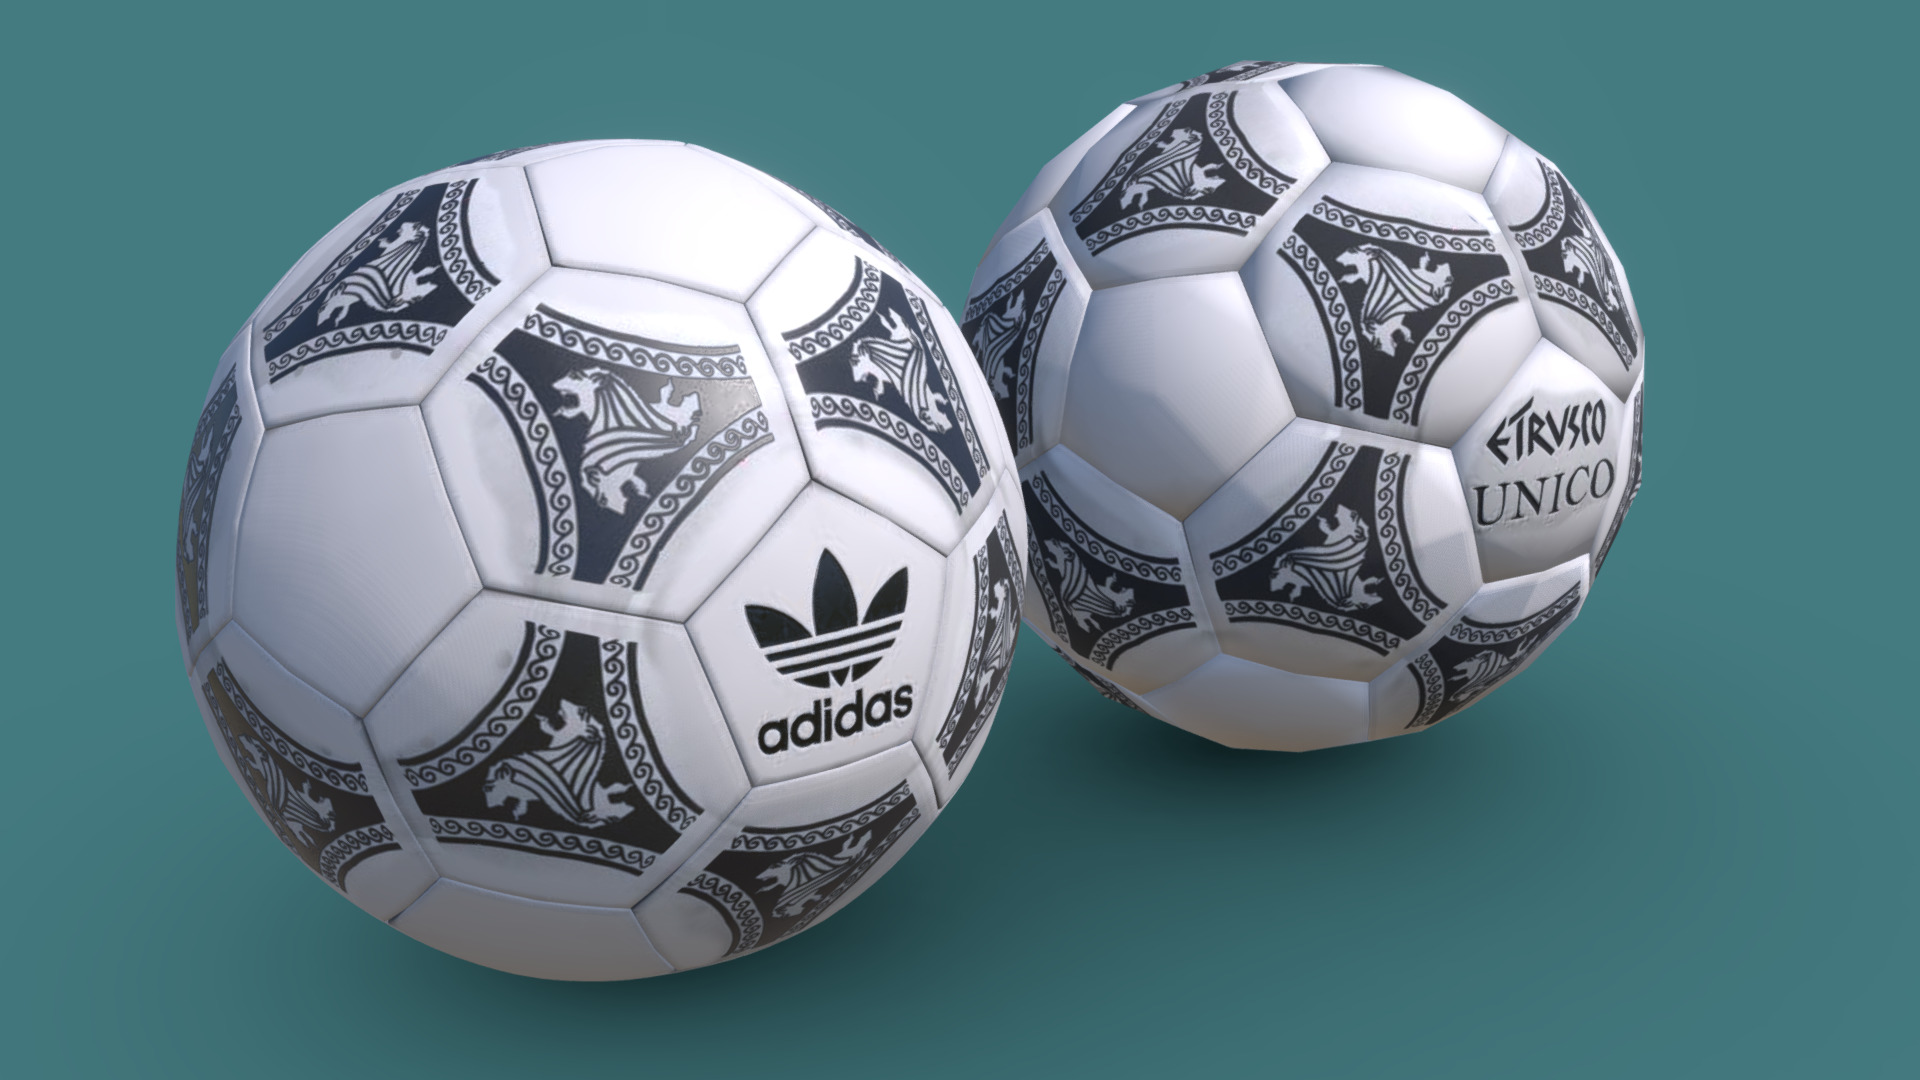 3D model 1990 Italia World Cup Etrusco Unico Ball - This is a 3D model of the 1990 Italia World Cup Etrusco Unico Ball. The 3D model is about a pair of football balls.